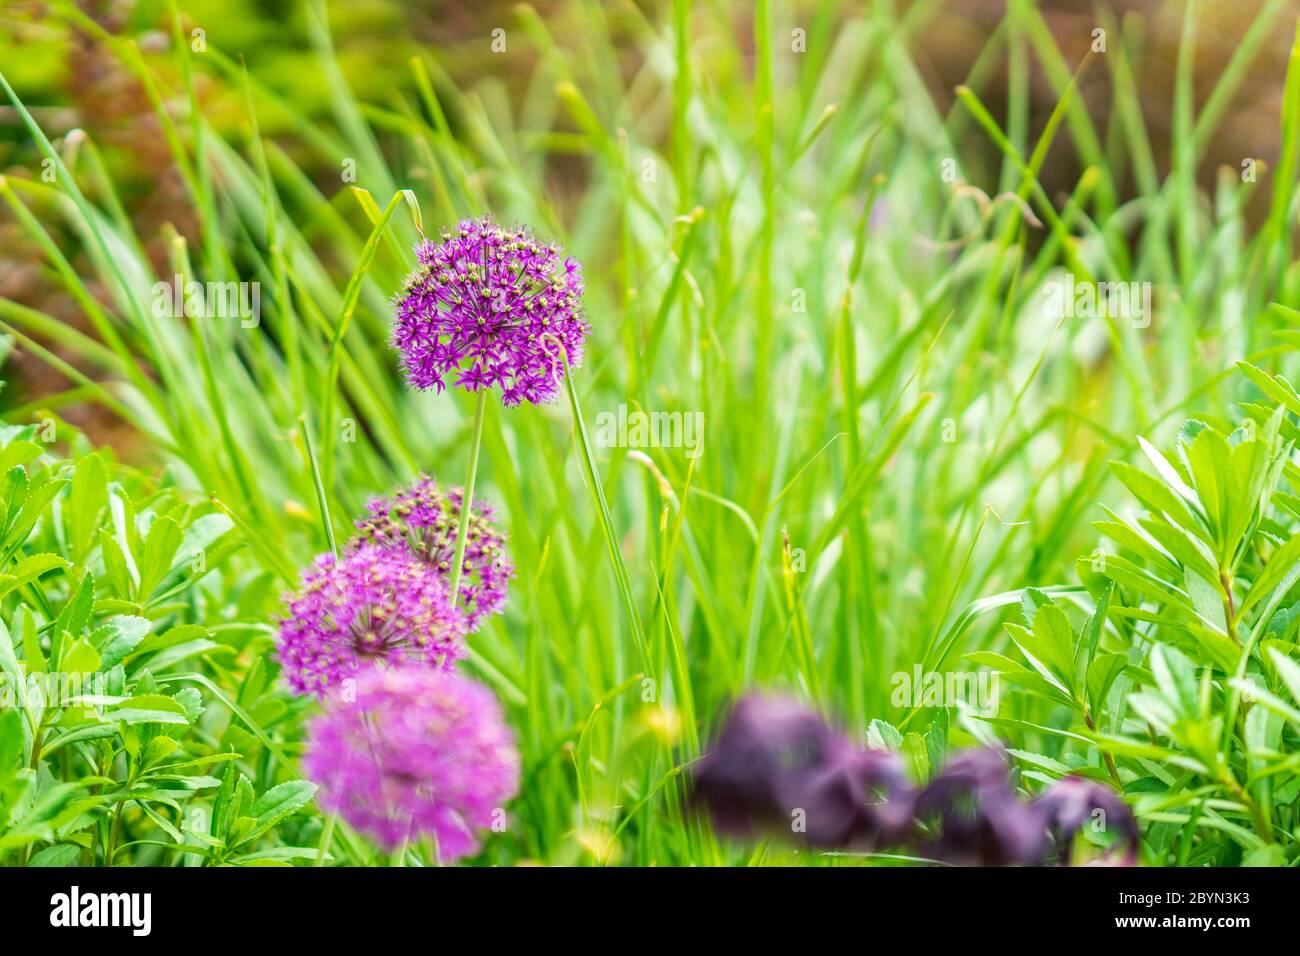 Purple Allium Llowers. (Allium Giganteum) Found in a New York City Park Stock Photo